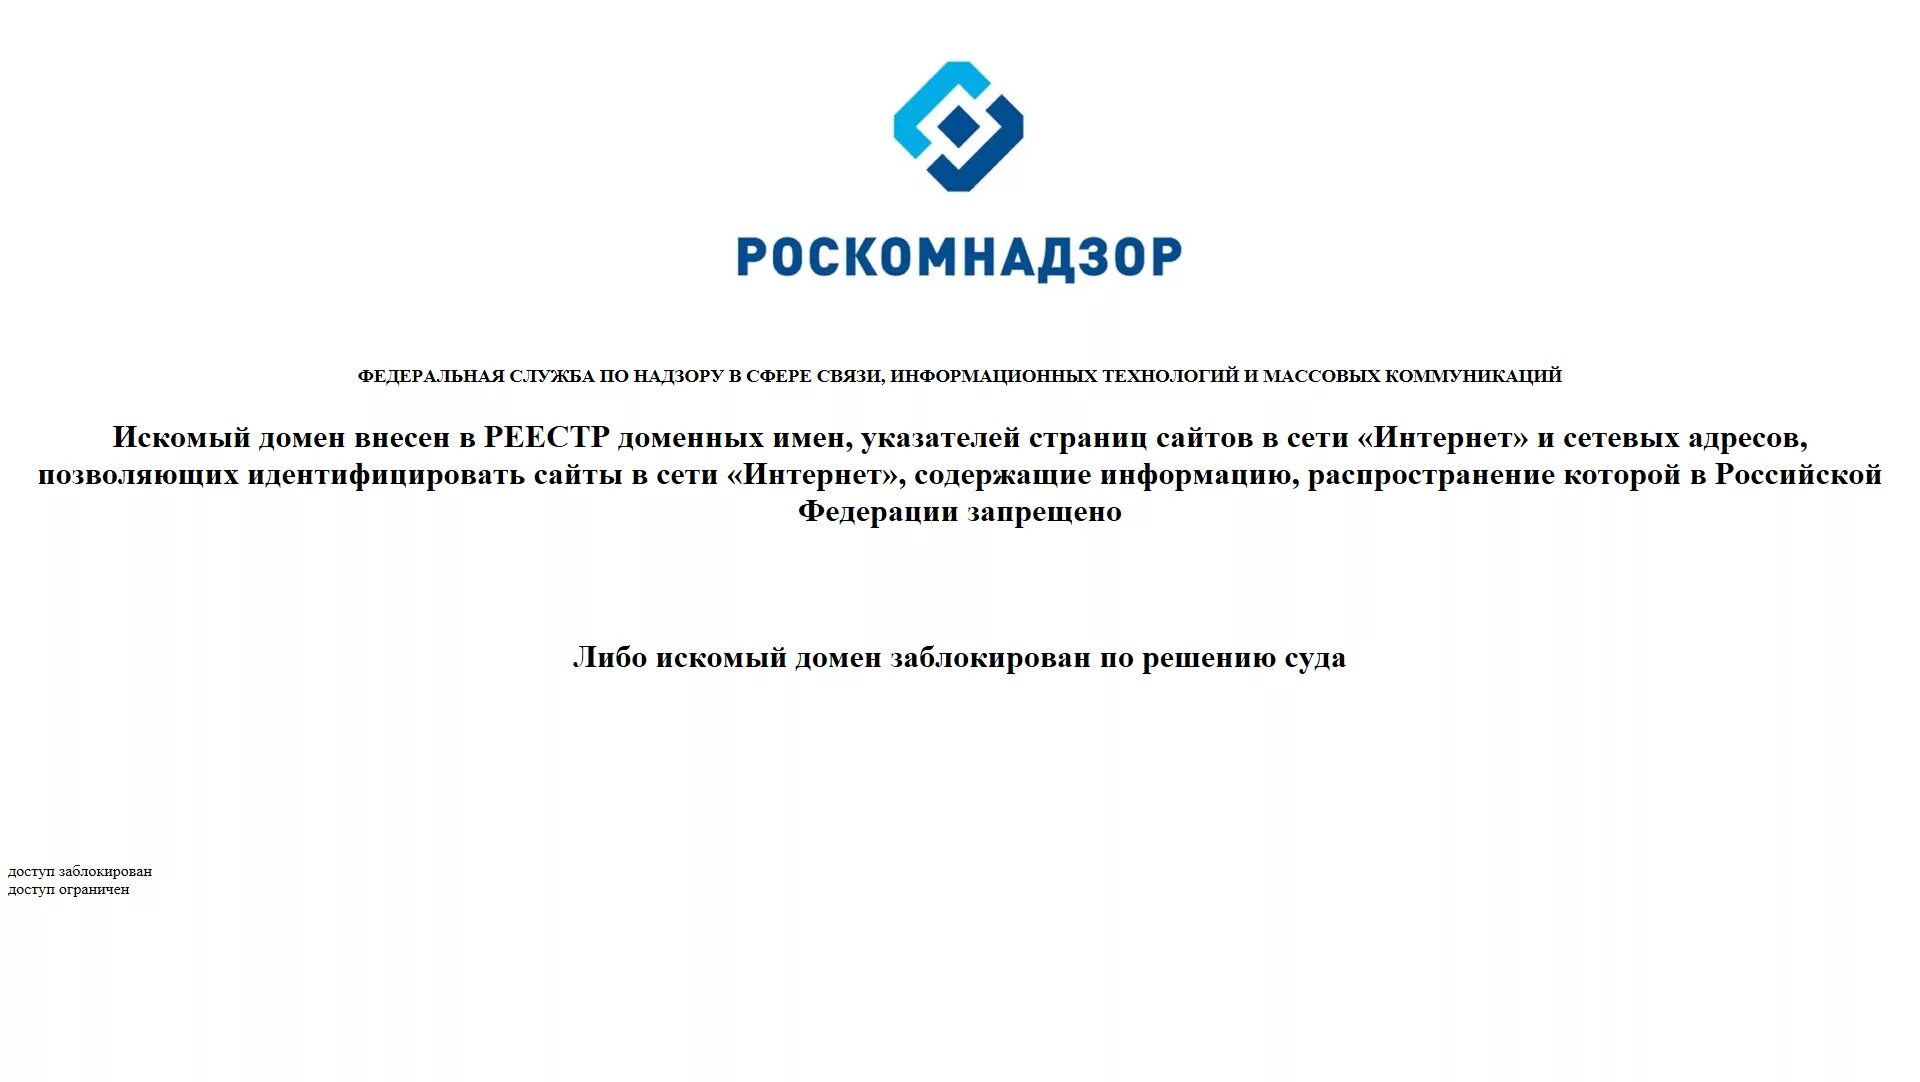 Сайт заблокирован Роскомнадзором. Роскомнадзор заблокировал. Заблокированные сайты. Заблокировать. Как подать заявку на обмен заблокированных активов